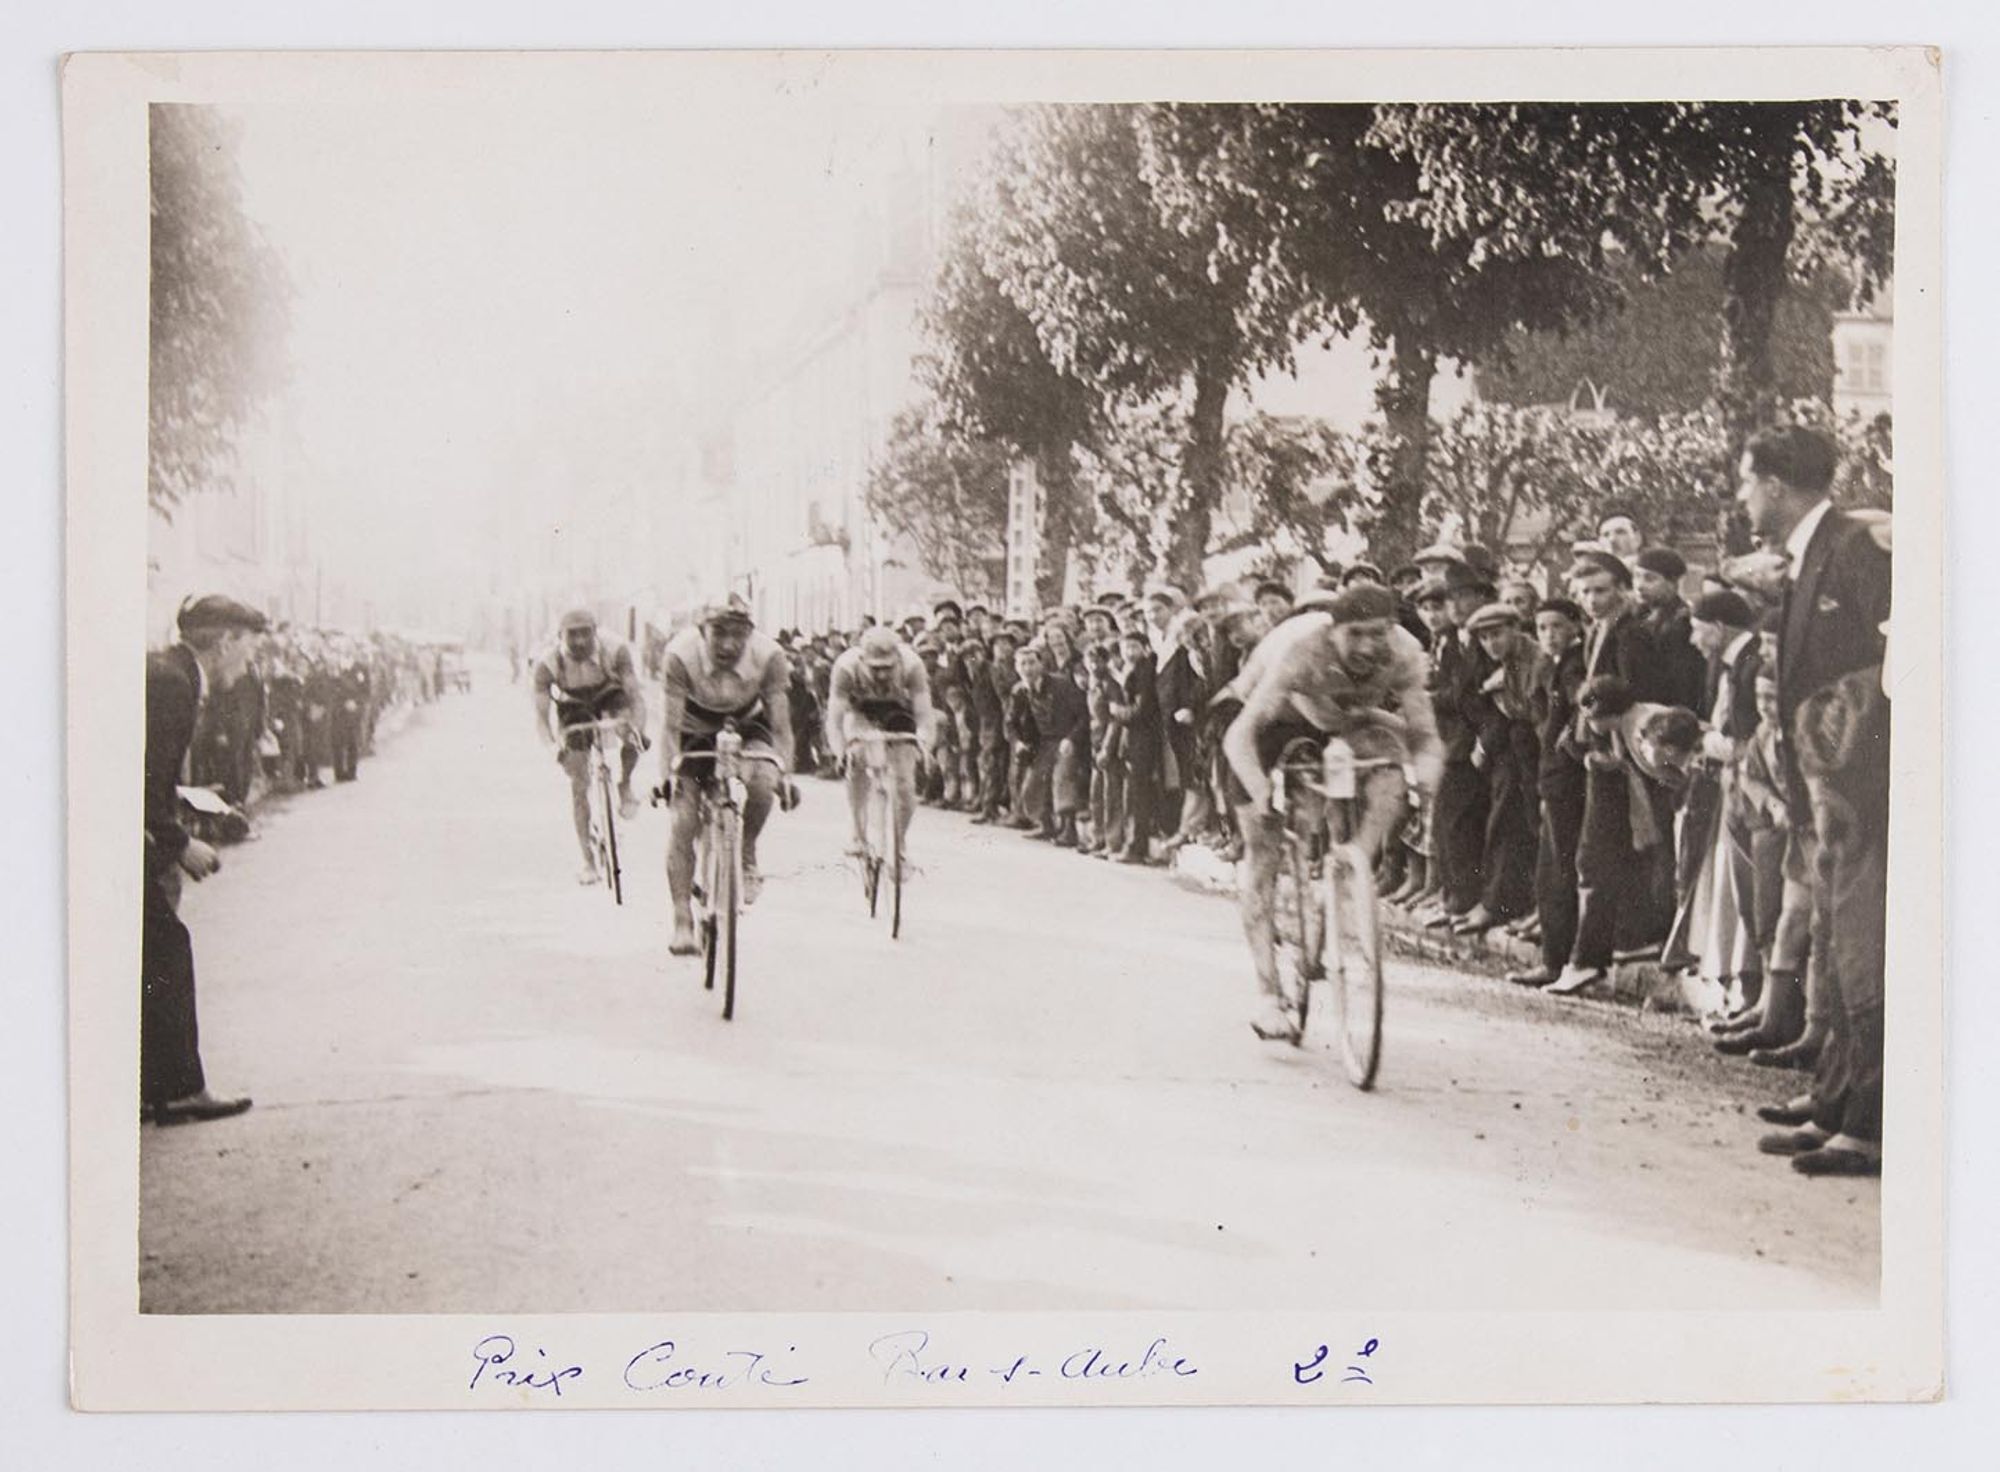 1931. Prix Couté. Arrivé des coureurs cyclistes à Bar-sur-Aube.